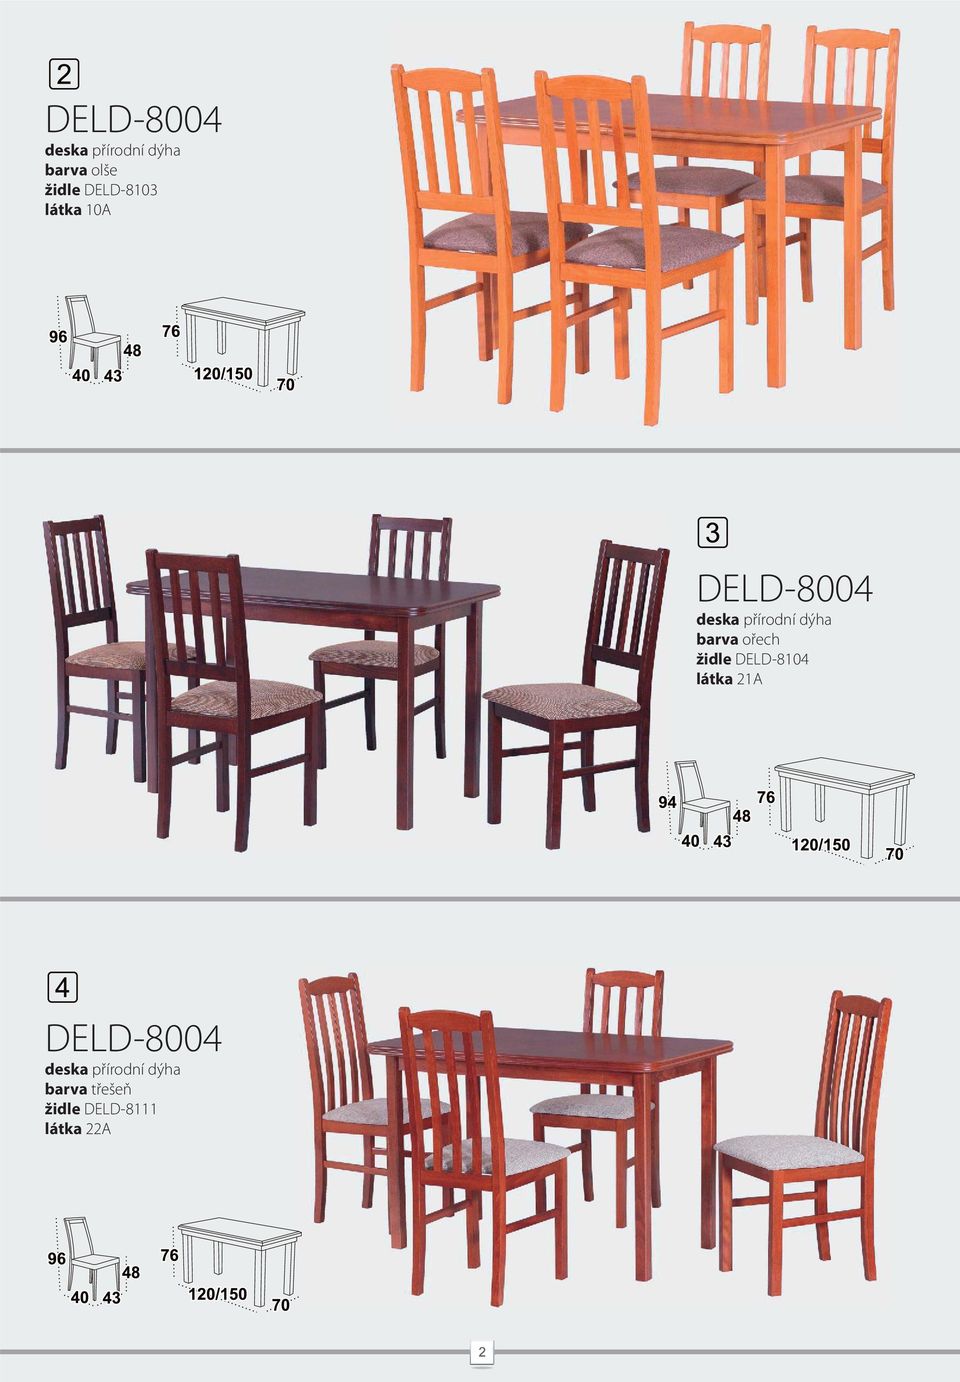 židle DELD-8104 látka 21A